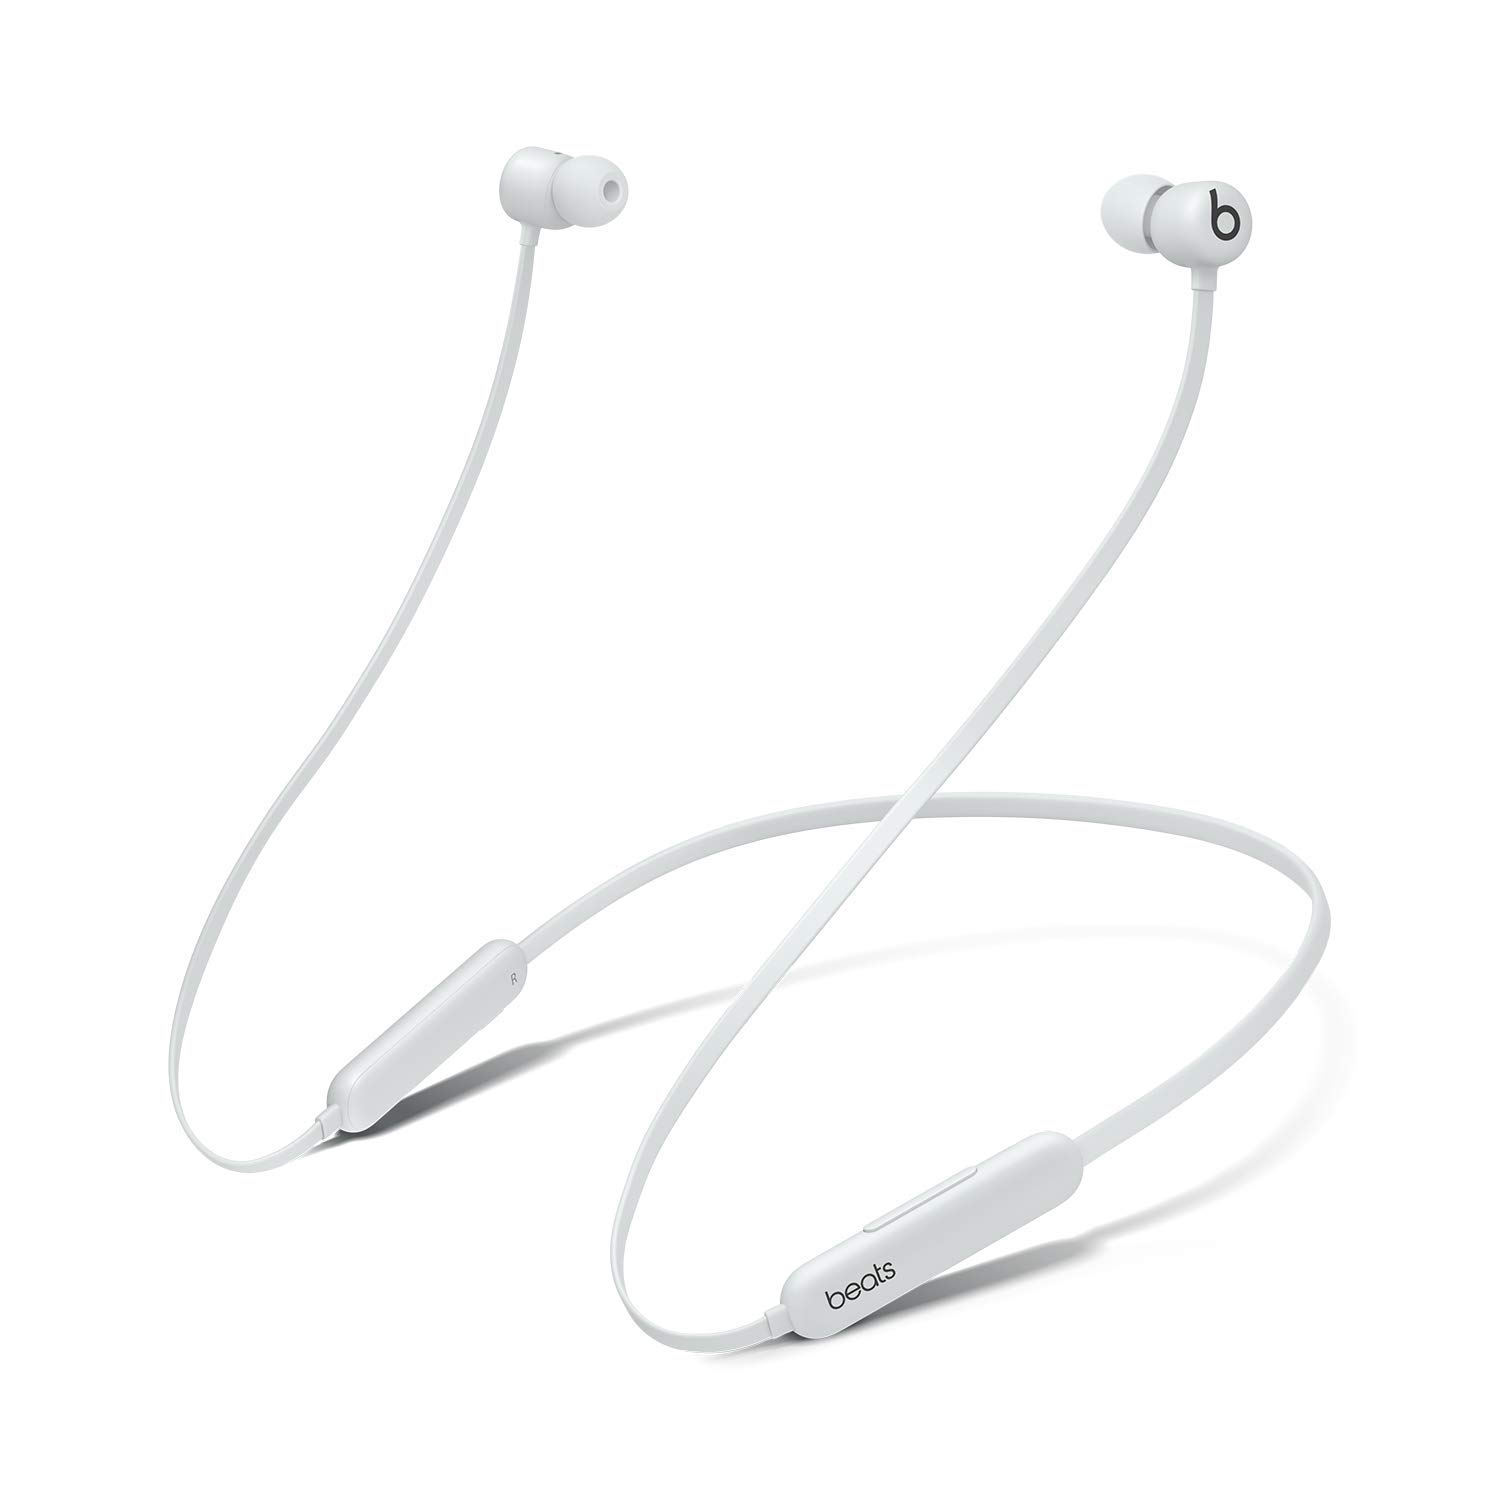 Beats Flex Wireless Earbud Headphones with Built-in Mic...